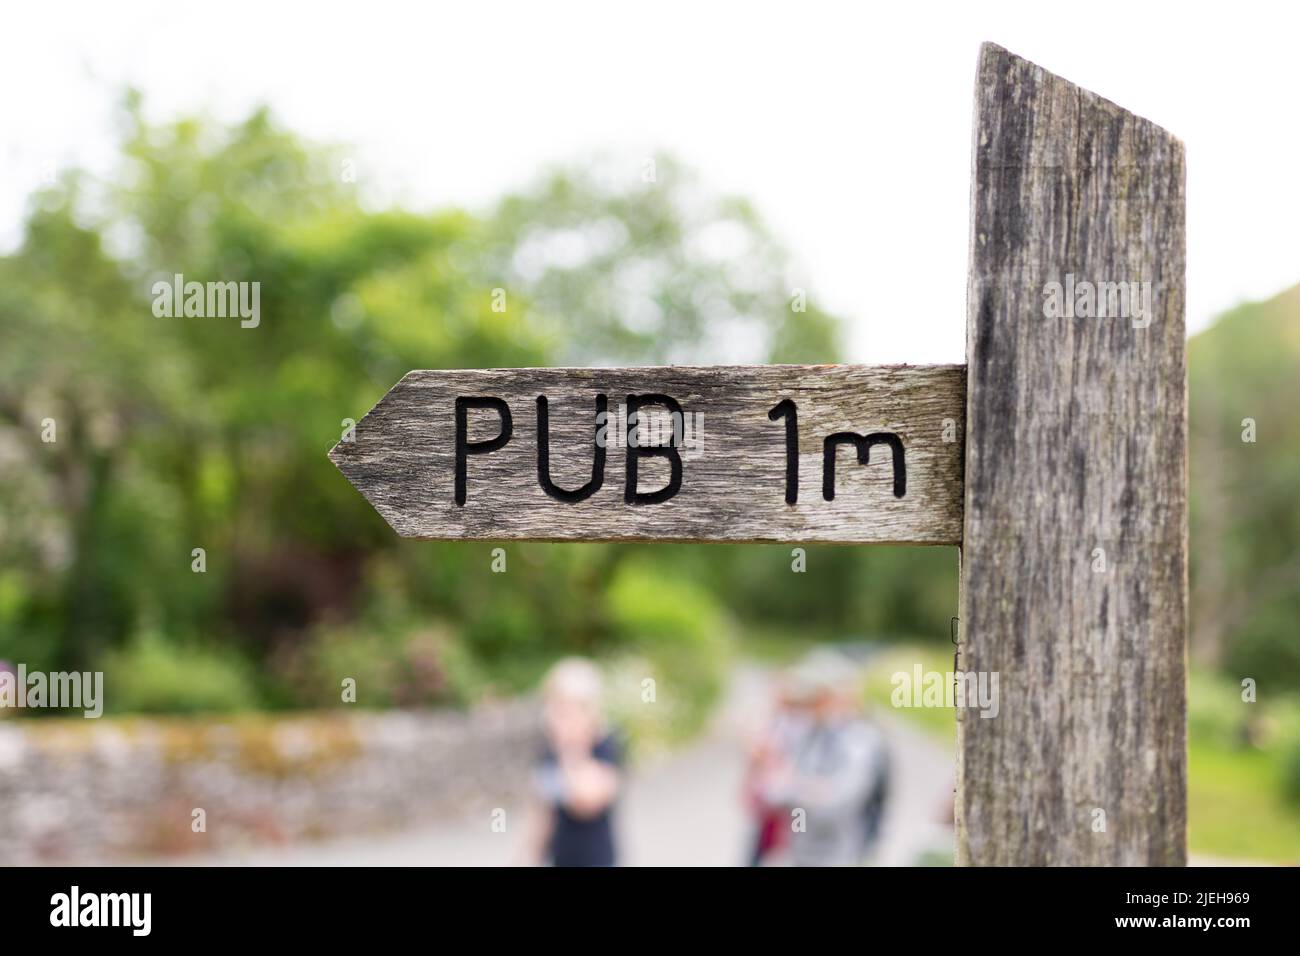 Pub Walk - panneau Pub 1m - Milldale, Peak District, Angleterre, Royaume-Uni Banque D'Images